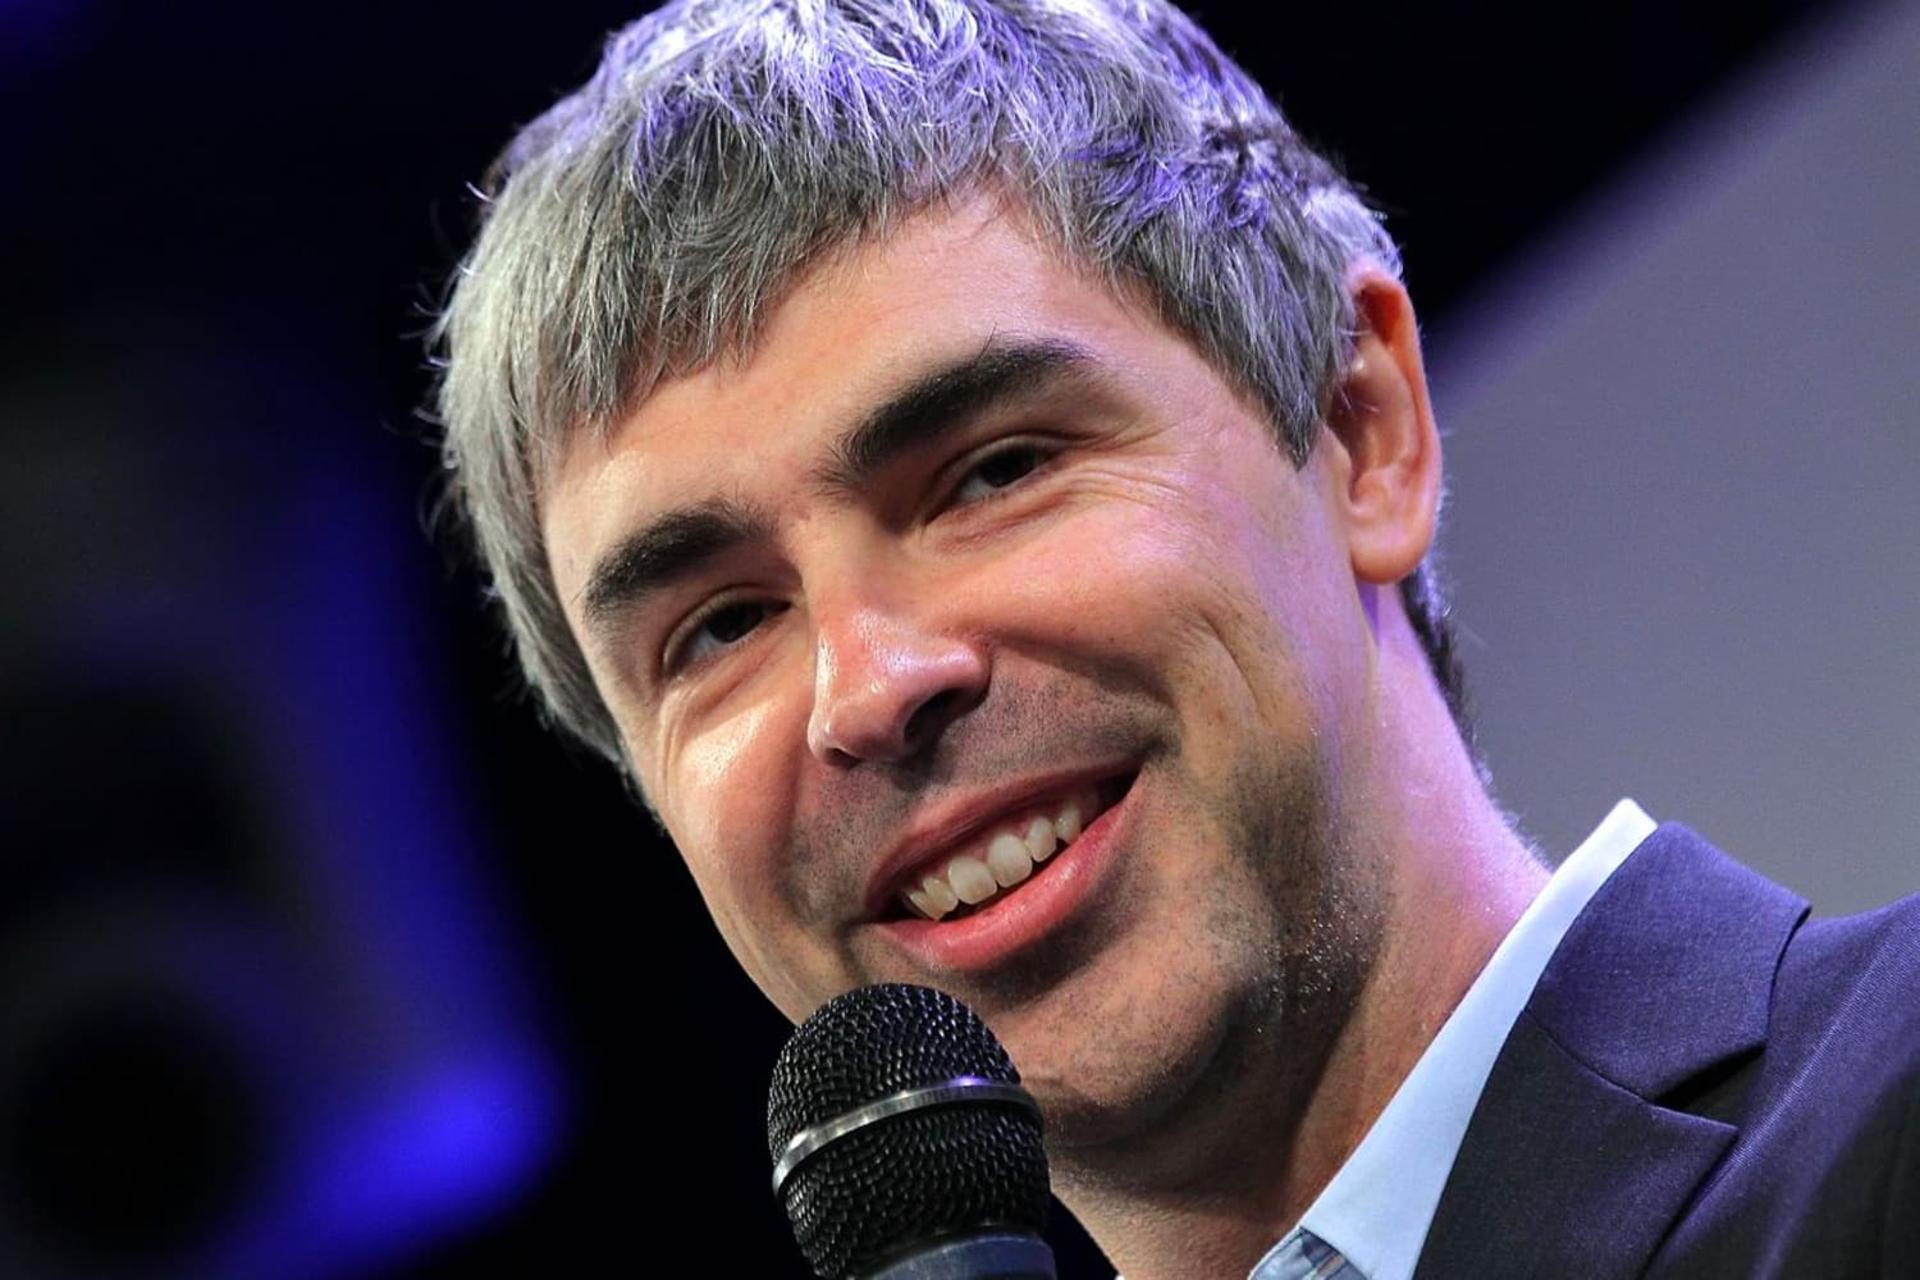 چهره خندان لری پیج / Larry Page هم بنیان گذار گوگل با میکروفون